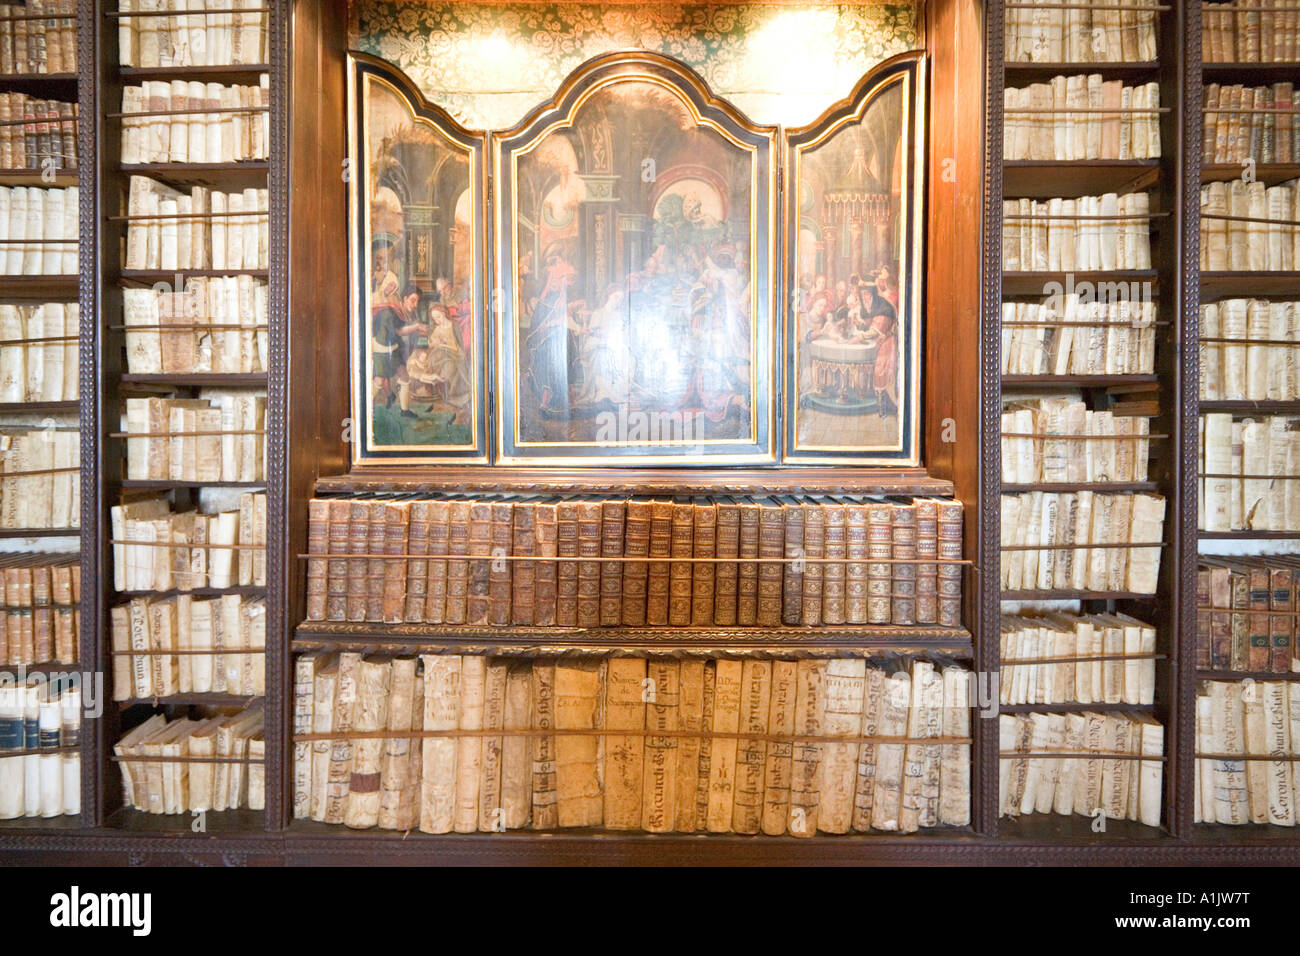 Intérieur de la bibliothèque, du vrai de la Cartuja (la Chartreuse), Valldemossa, Majorque, Îles Baléares, Espagne Banque D'Images